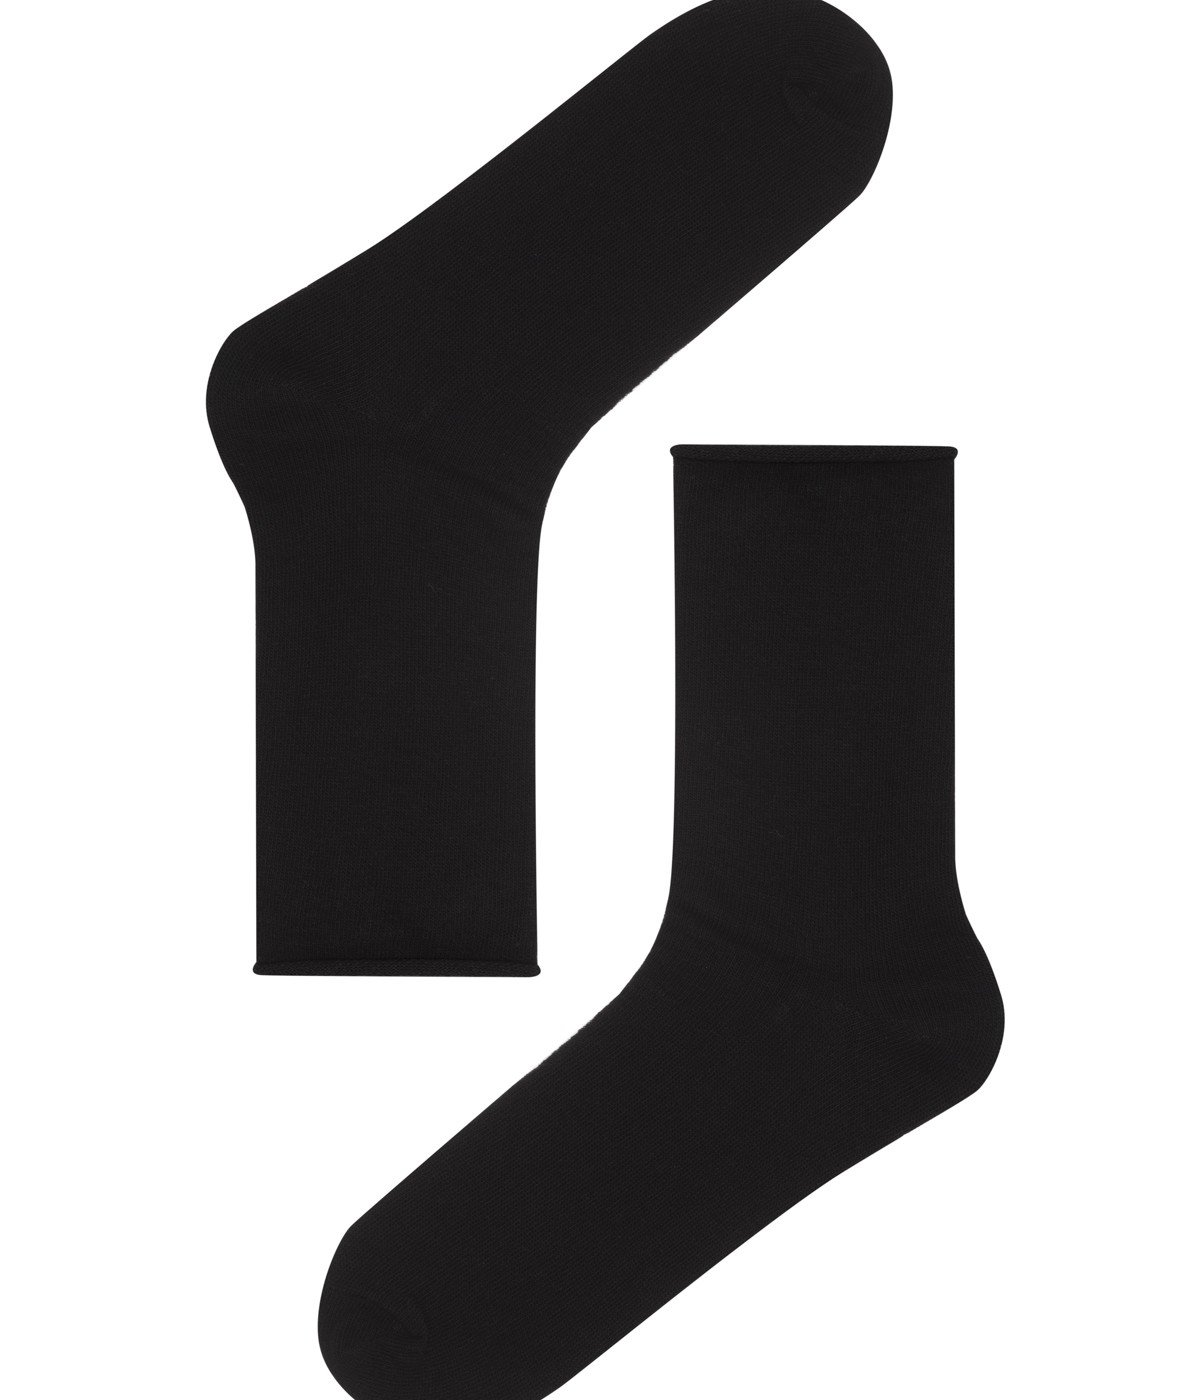 Simple 4in1 Socks